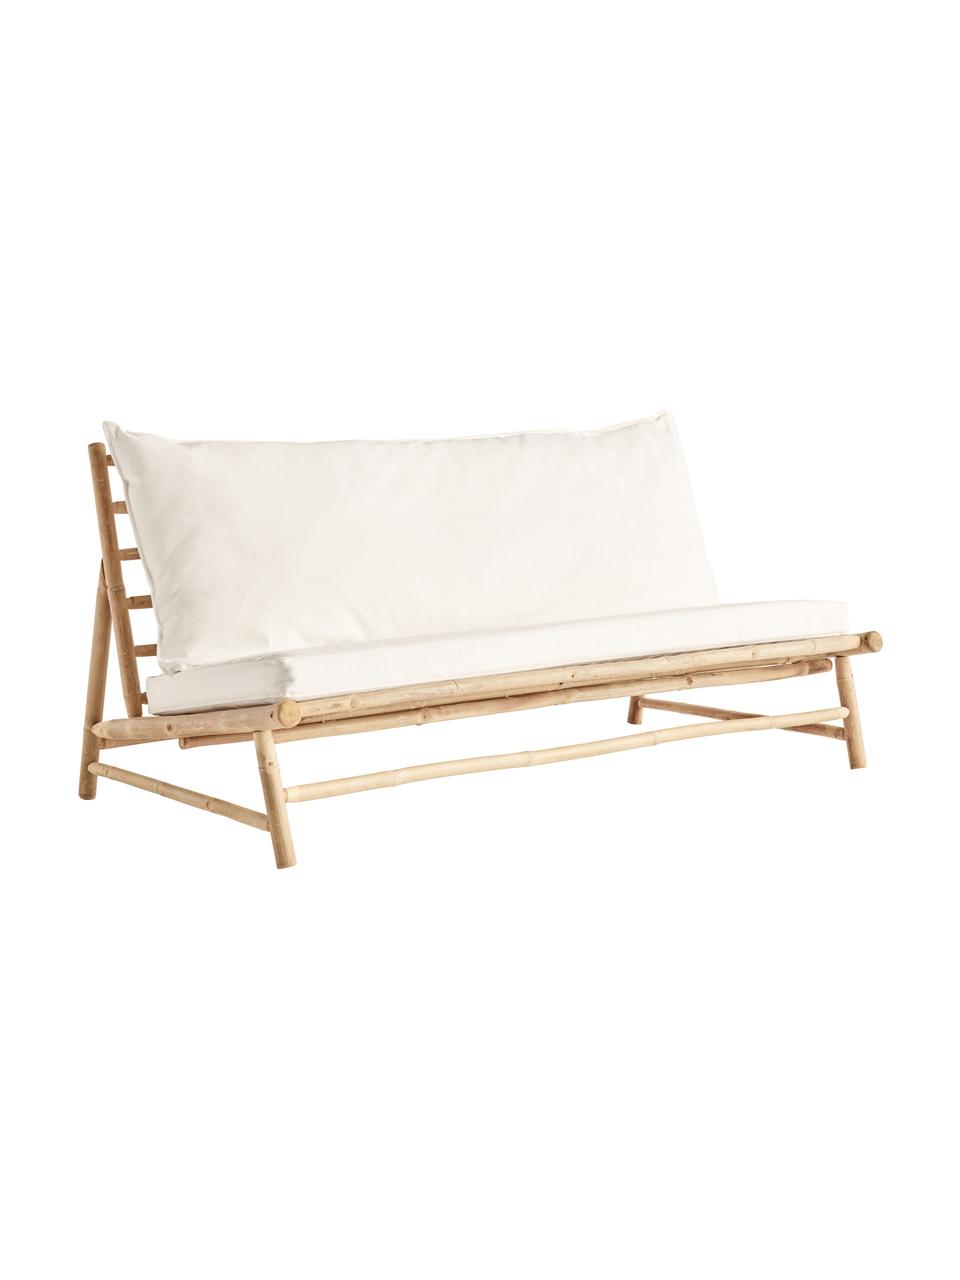 Sofa wypoczynkowa z drewna bambusowego Bamslow (2-osobowa), Stelaż: drewno bambusowe, Tapicerka: 100% bawełna, Biały, brązowy, S 160 x G 87 cm